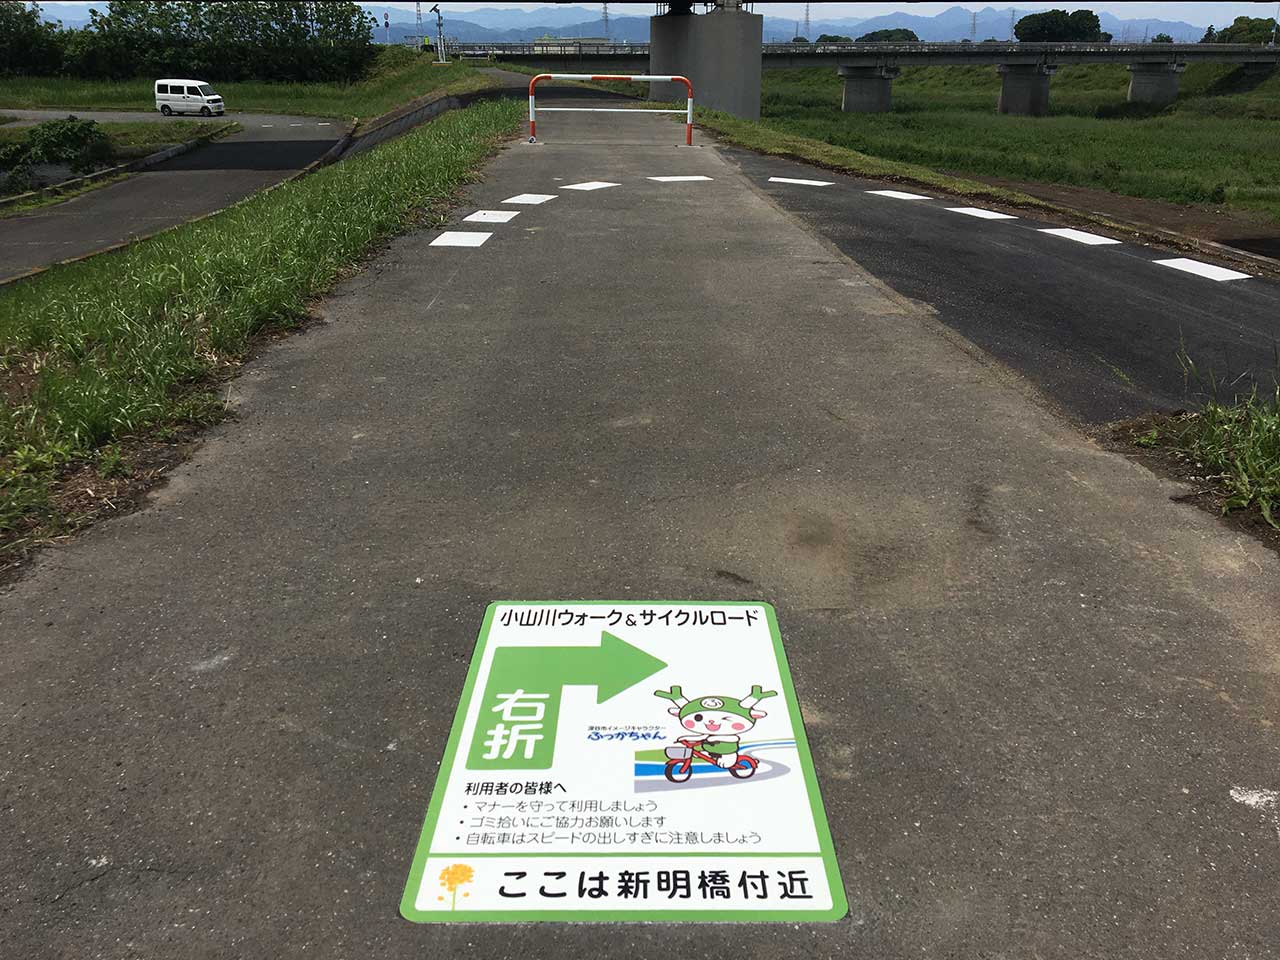 サイクリングコース【 埼玉県 深谷市 】